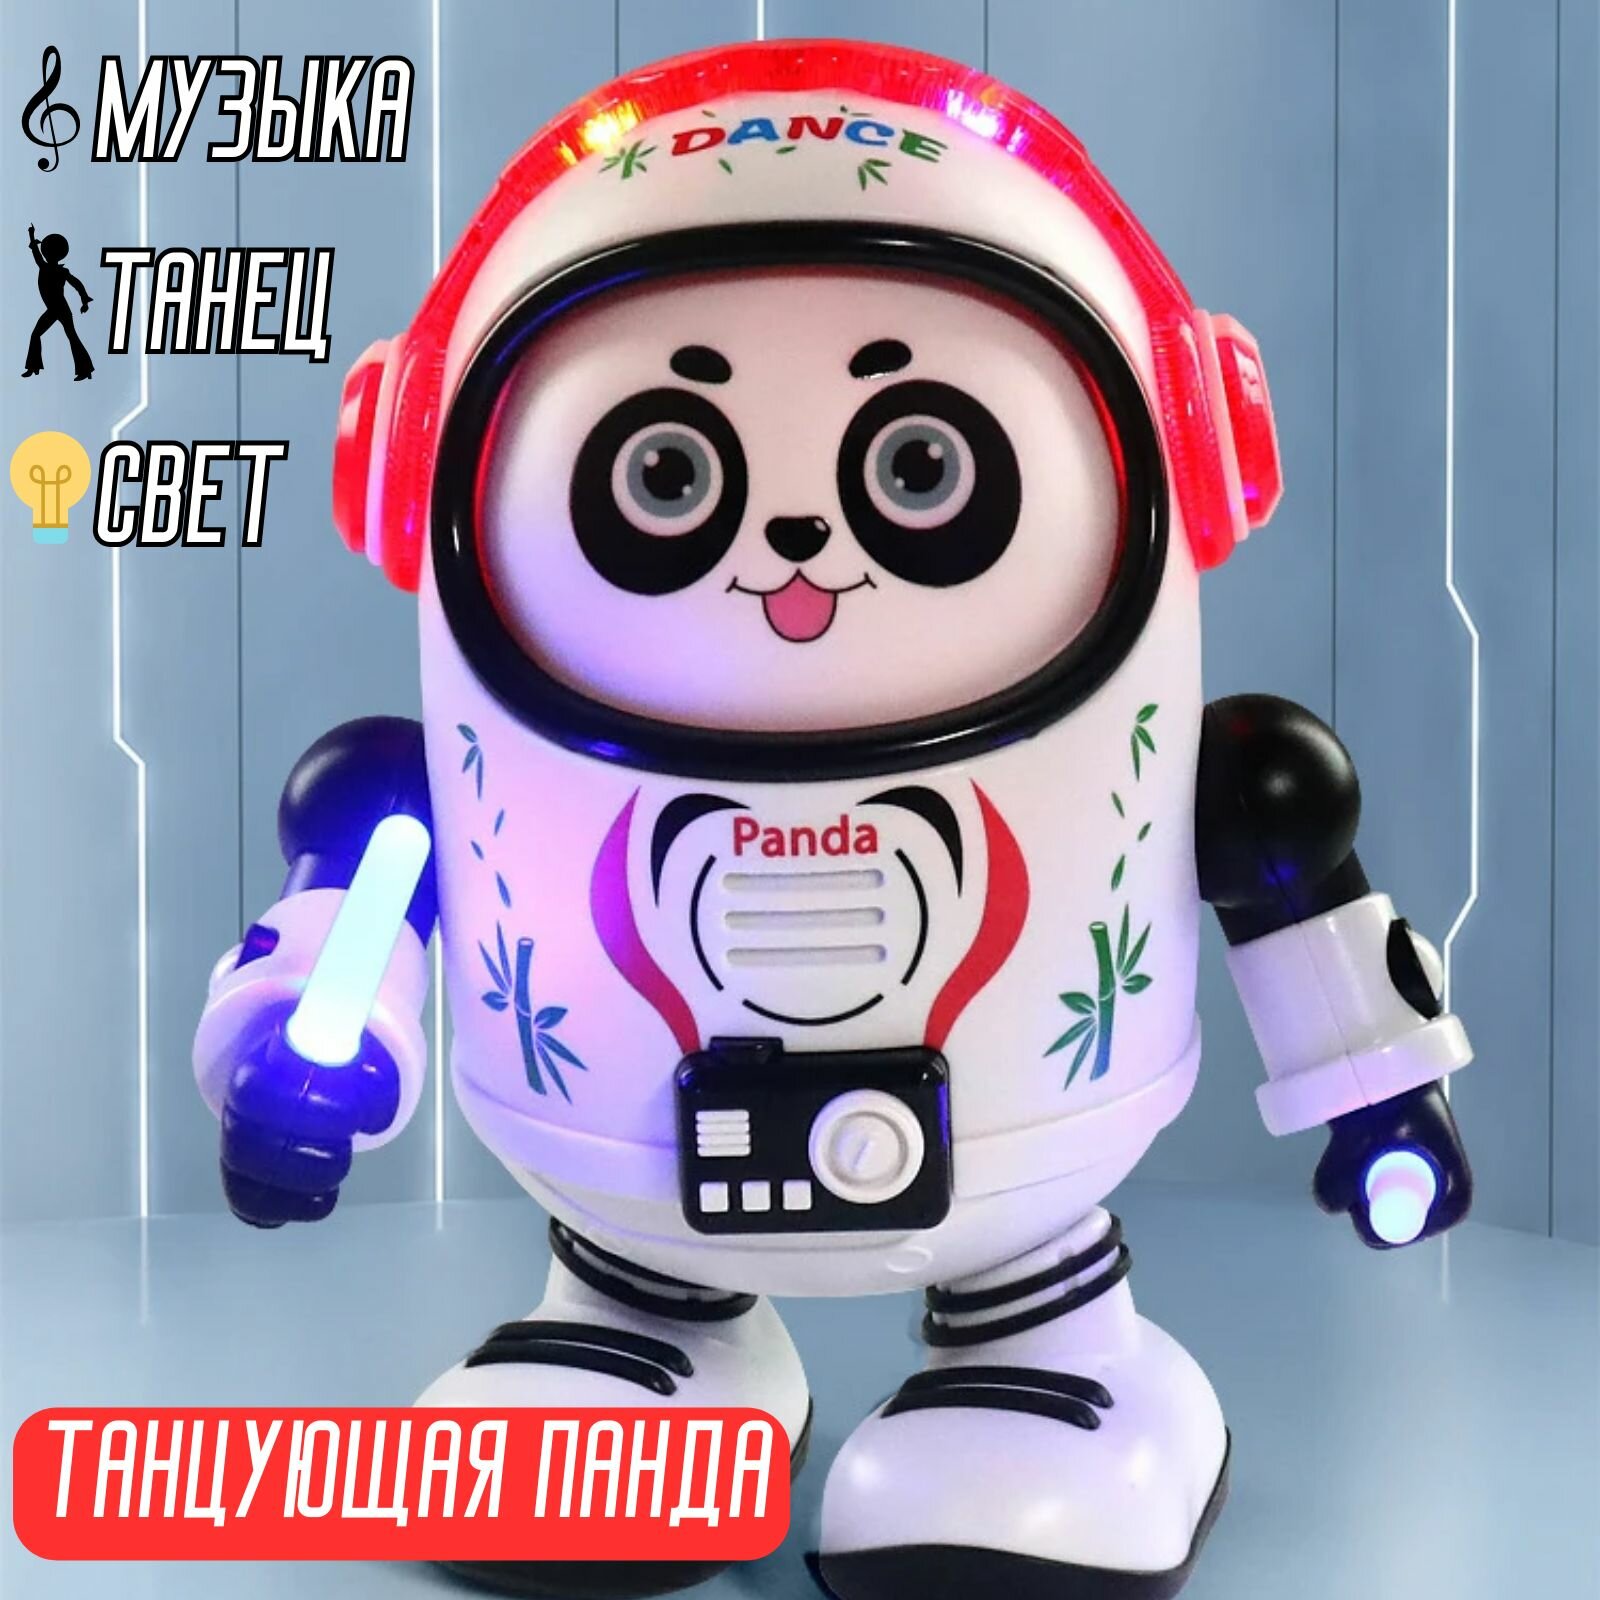 Музыкальная танцующая игрушка "Панда в наушниках" со световыми и звуковыми эффектами